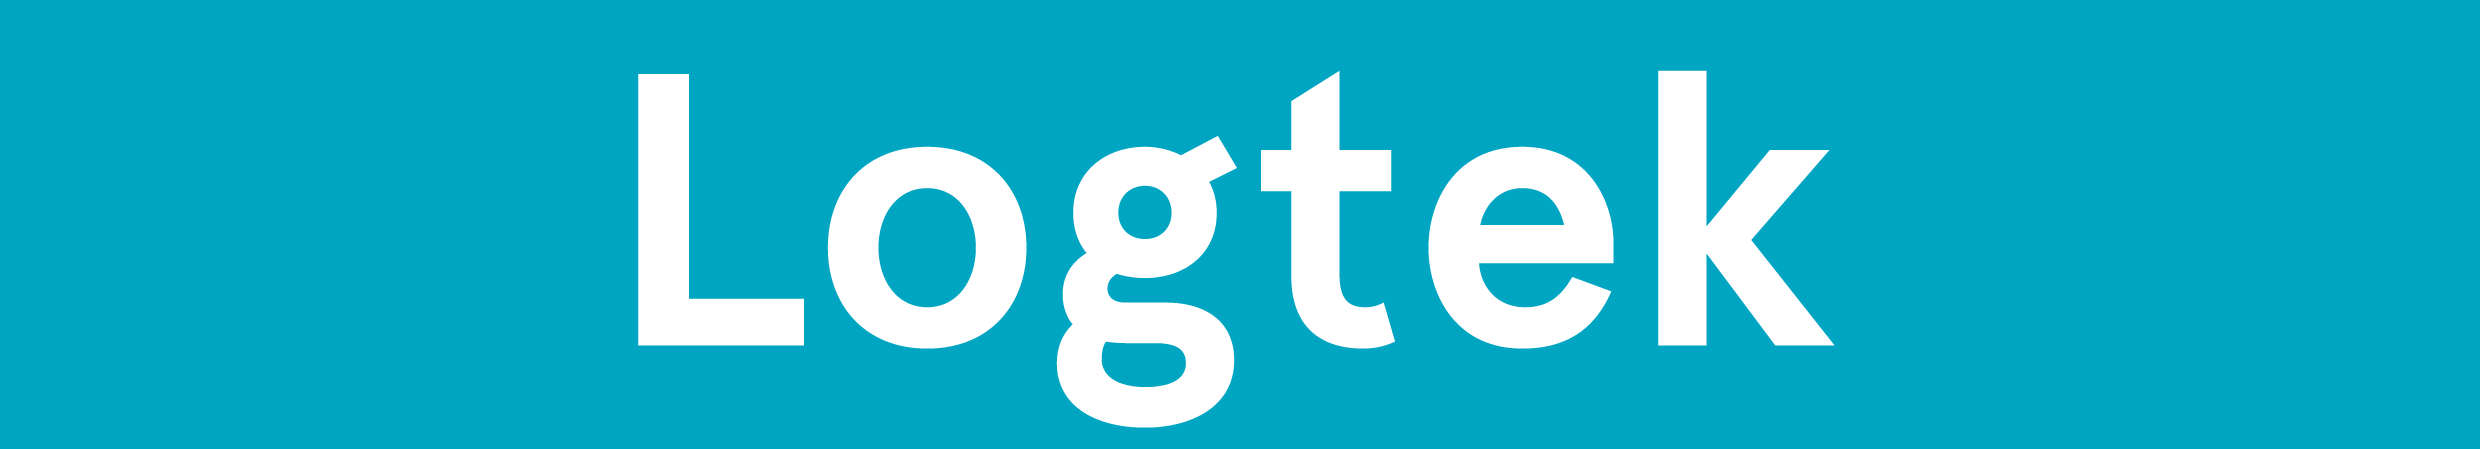 Logtek logo, confirmed until 2025-02-01